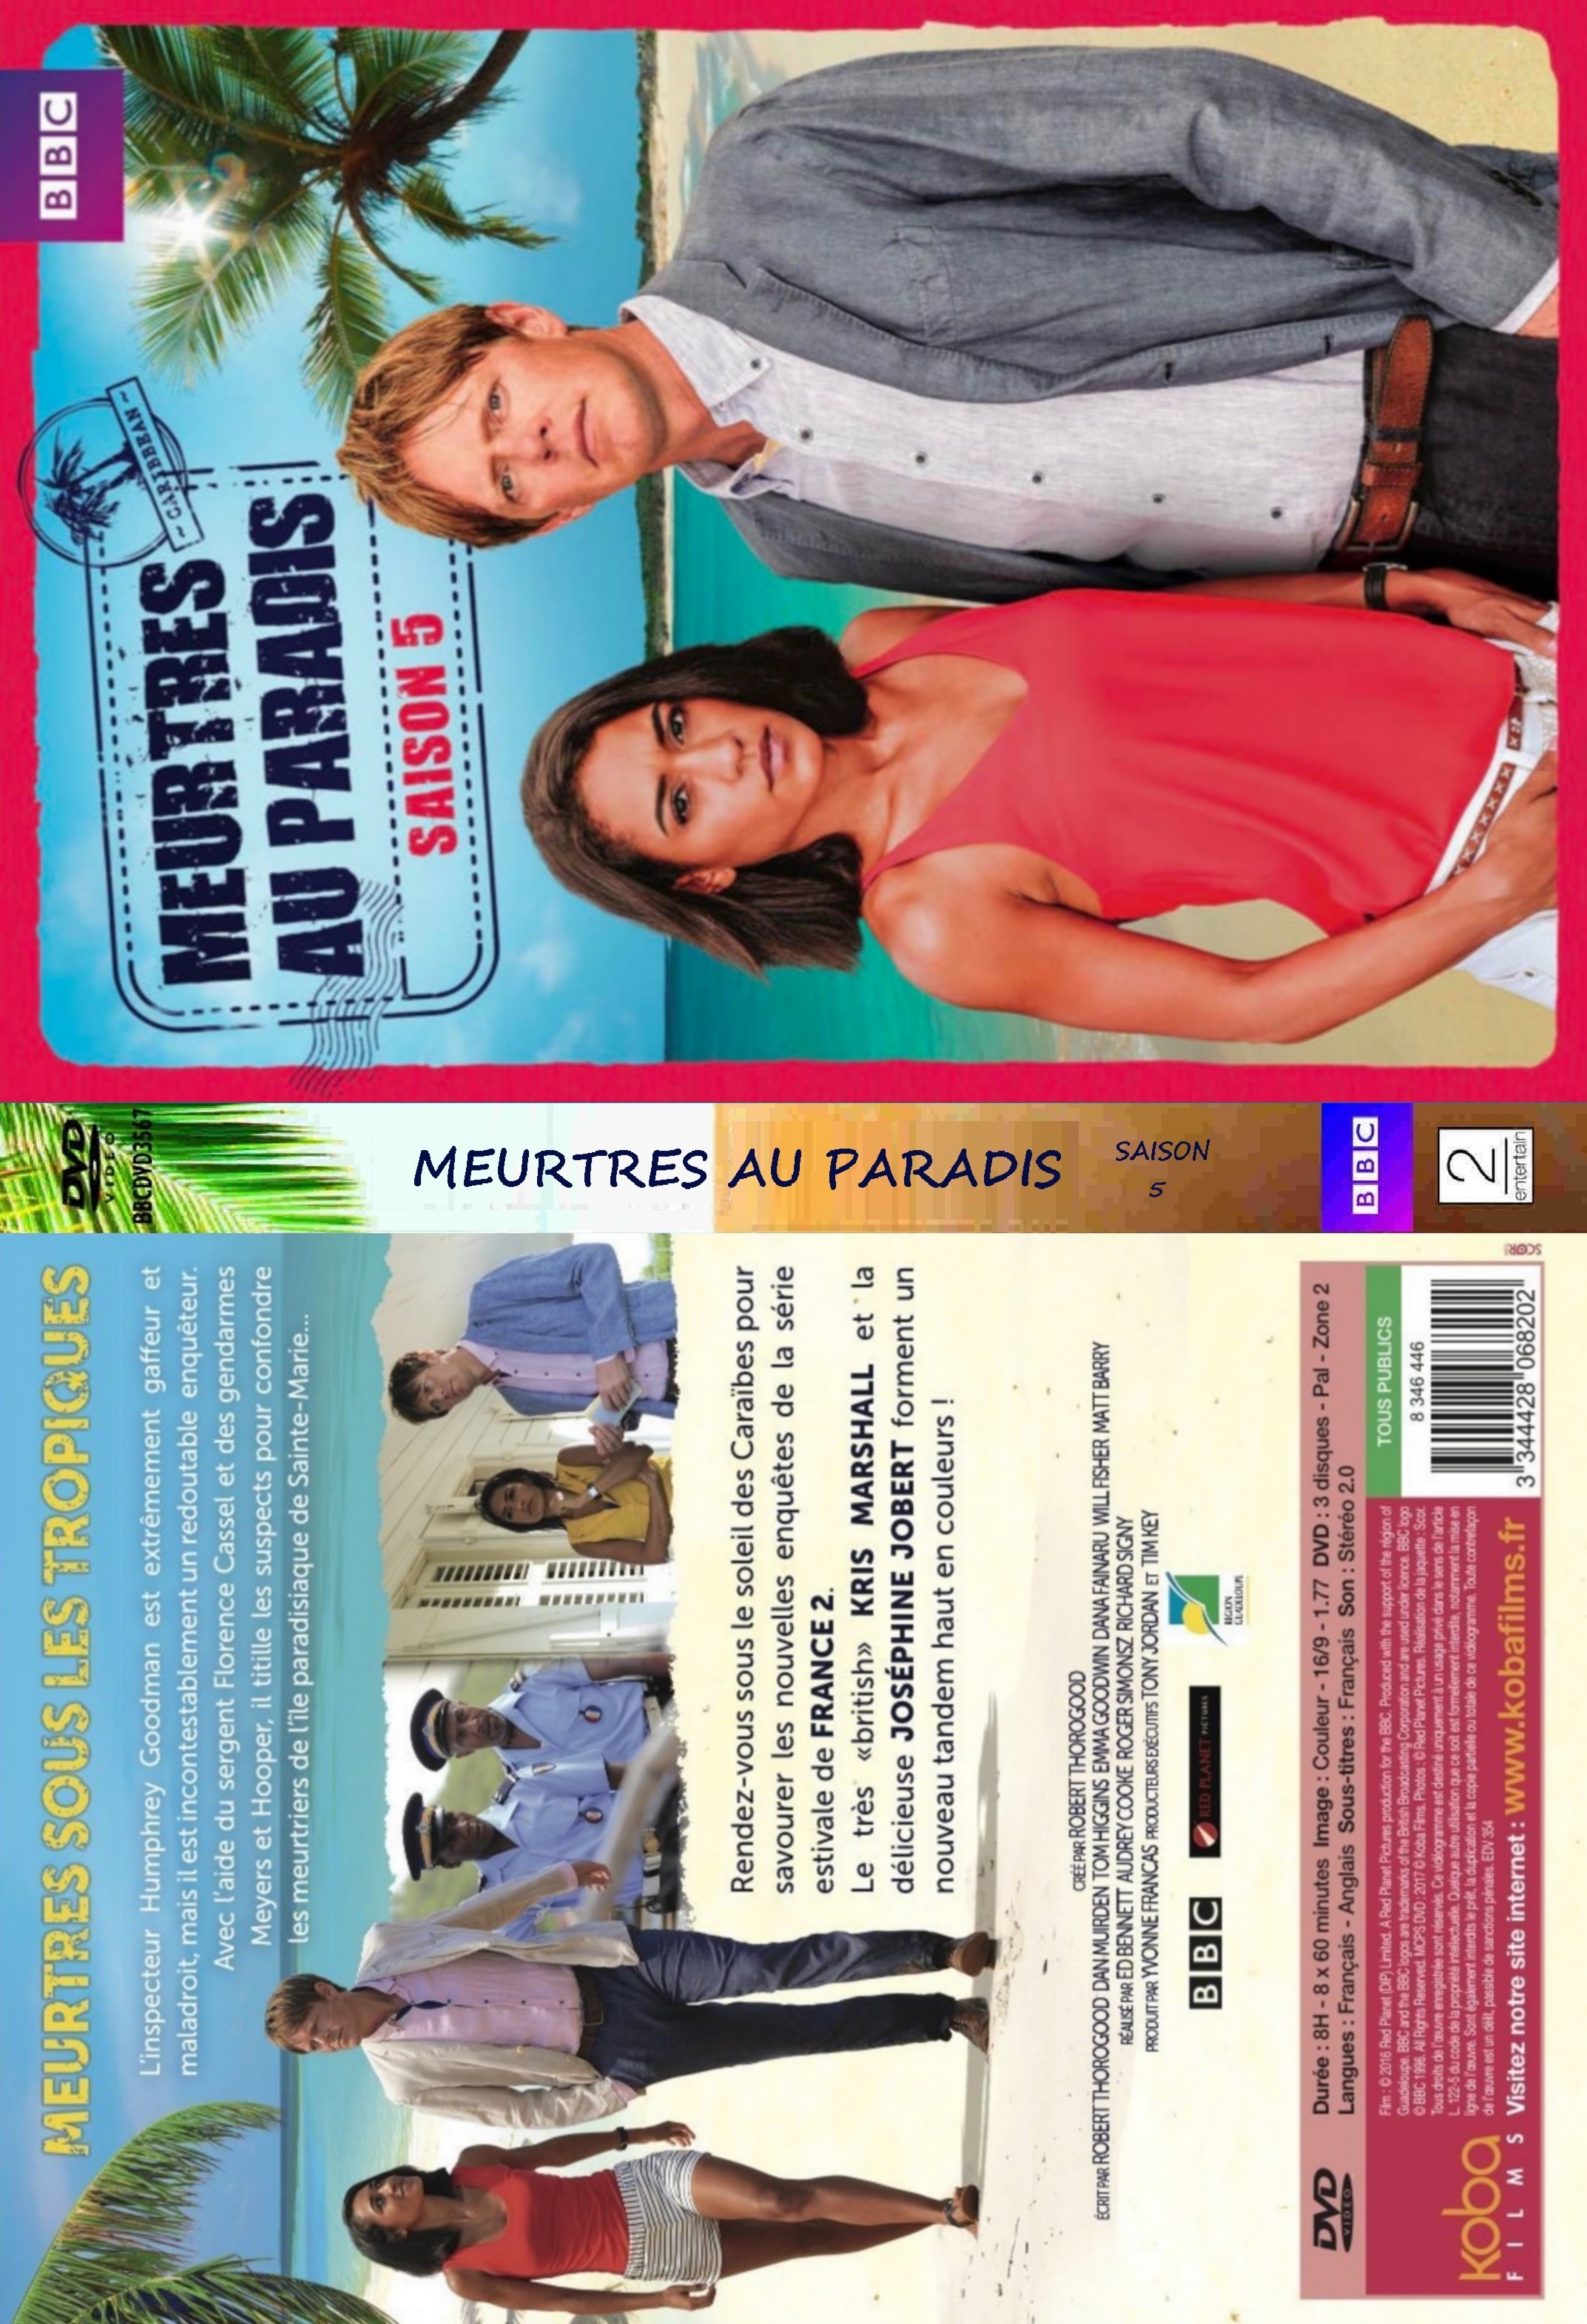 Jaquette DVD Meurtres au Paradis 5 - SLIM